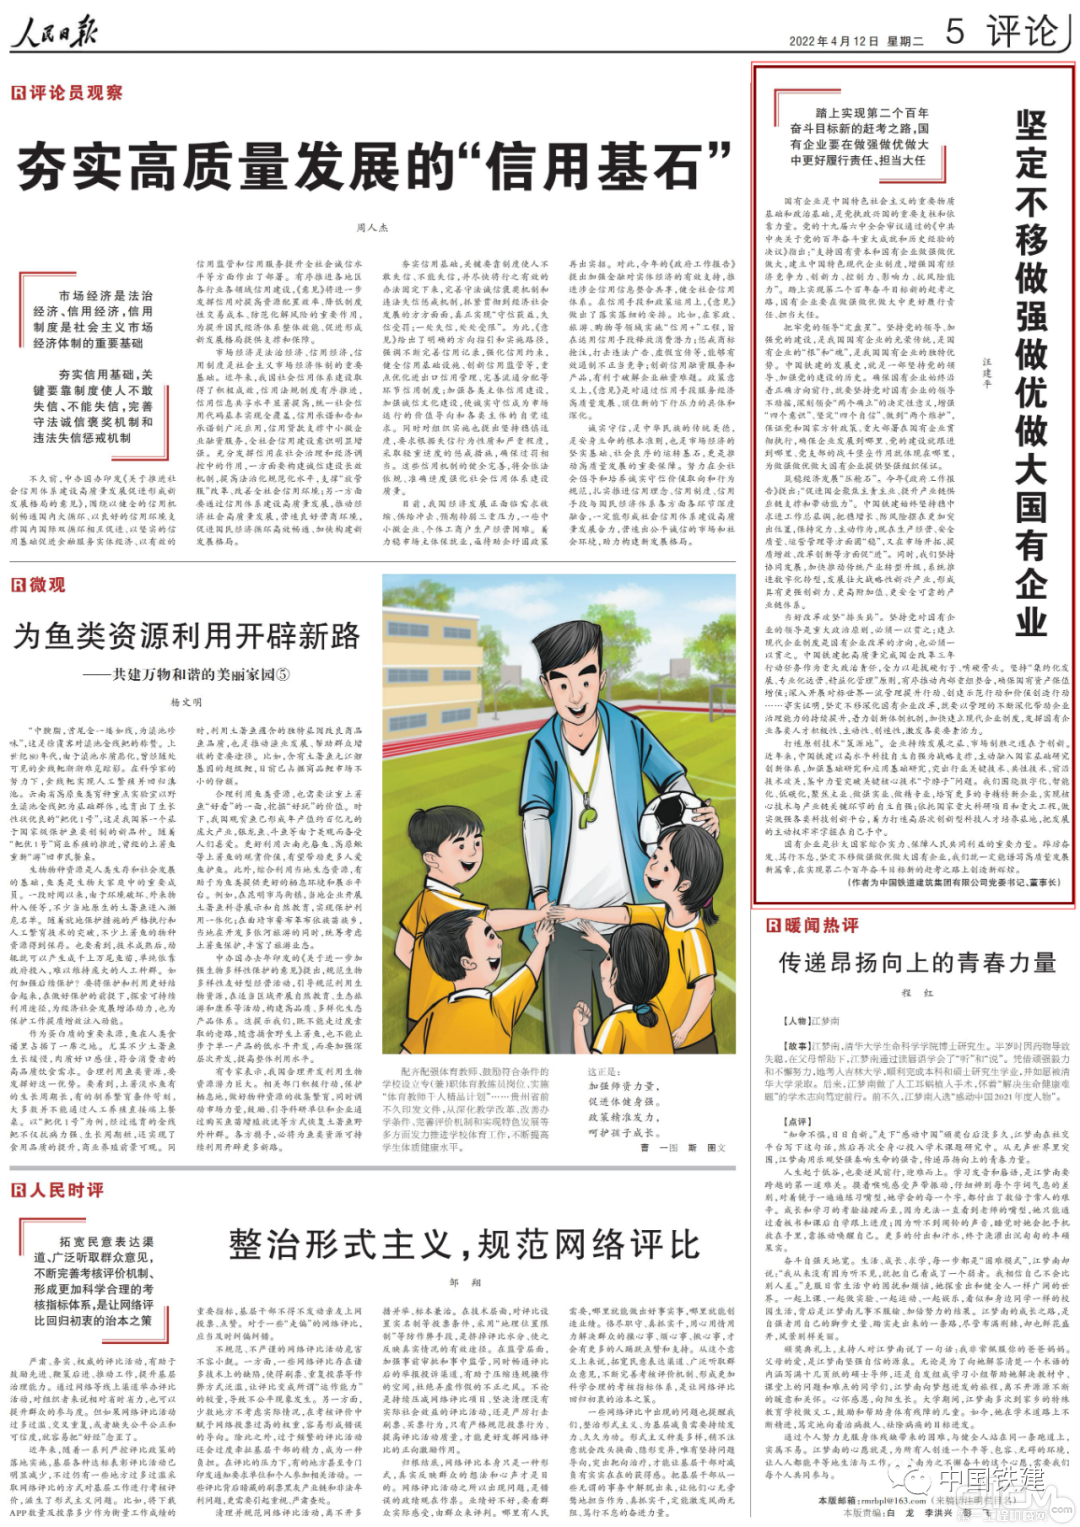 《人民日报》发表中国铁建董事长汪建平署名文章